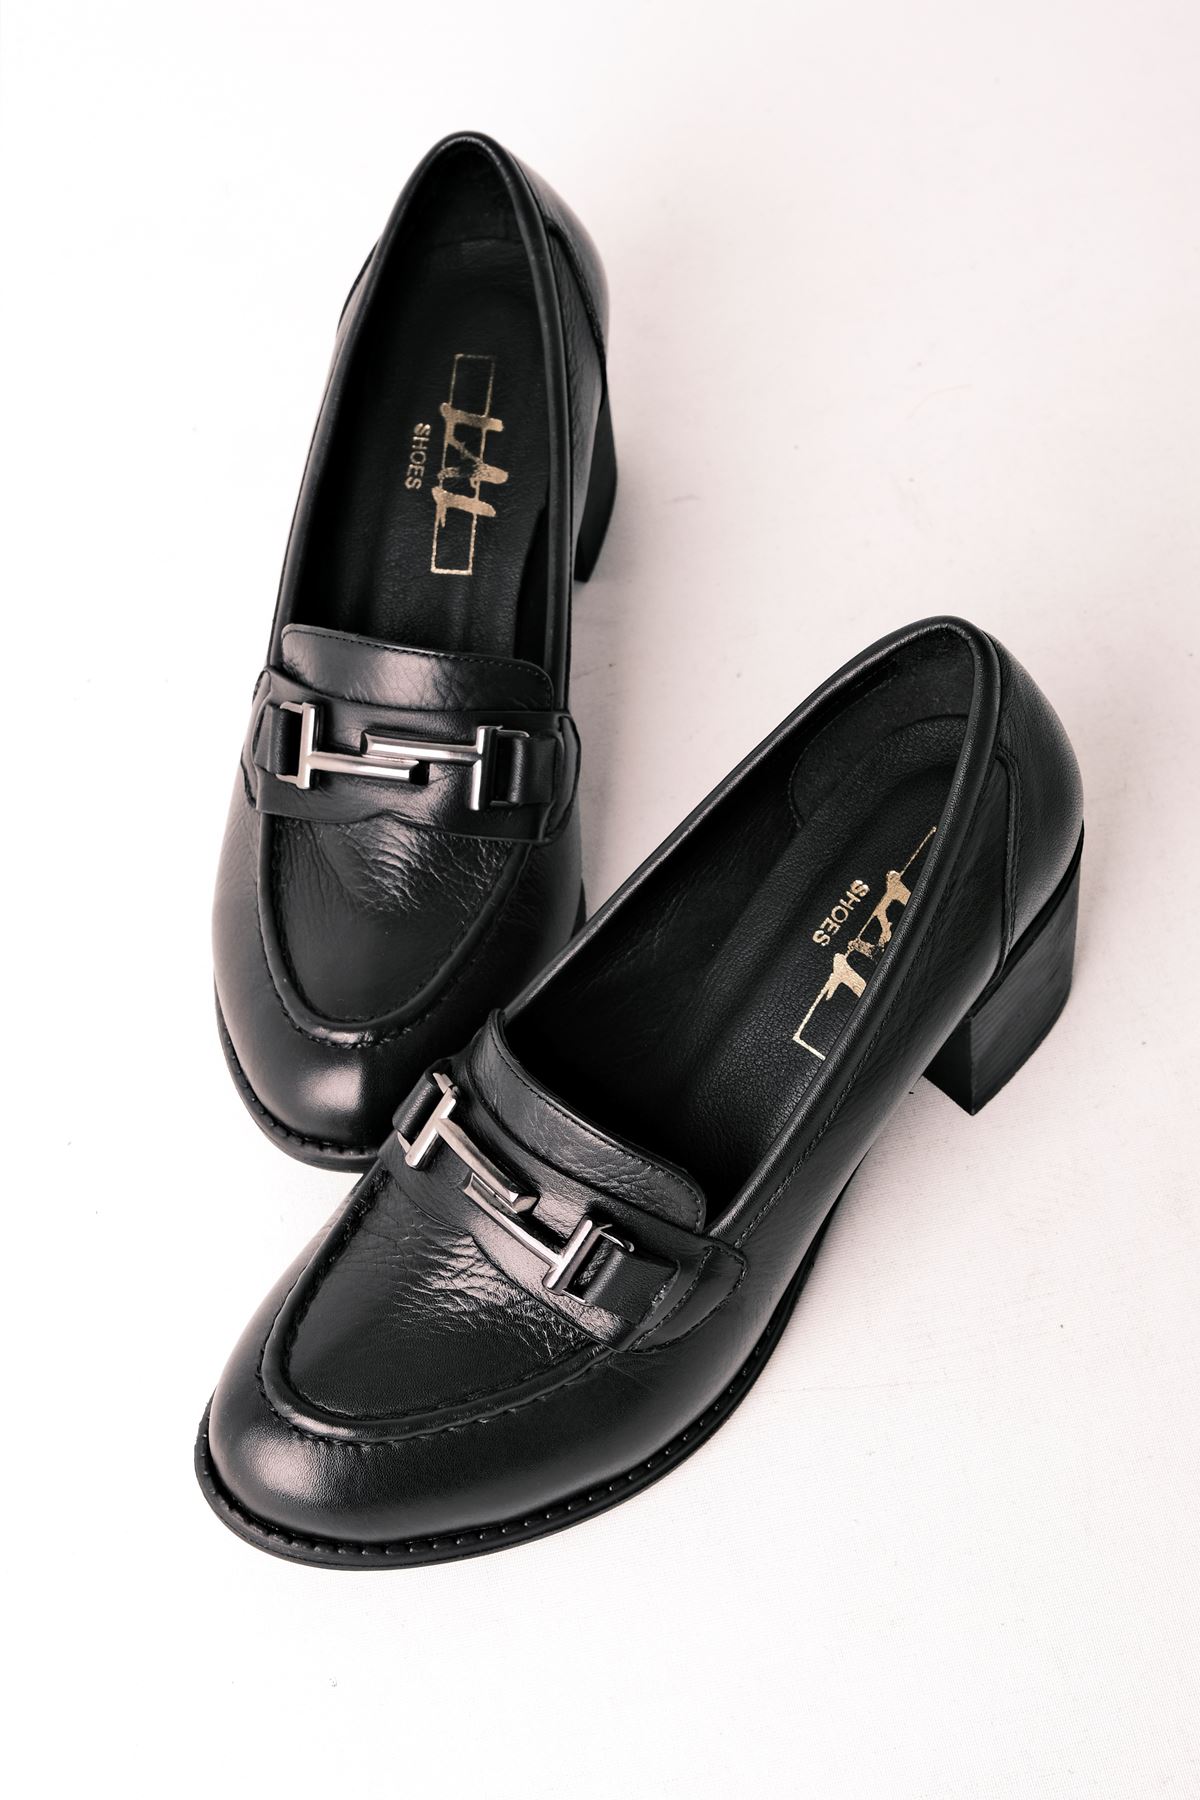 Brookl Kadın Hakiki Deri  Topuklu Ayakkabı-siyah